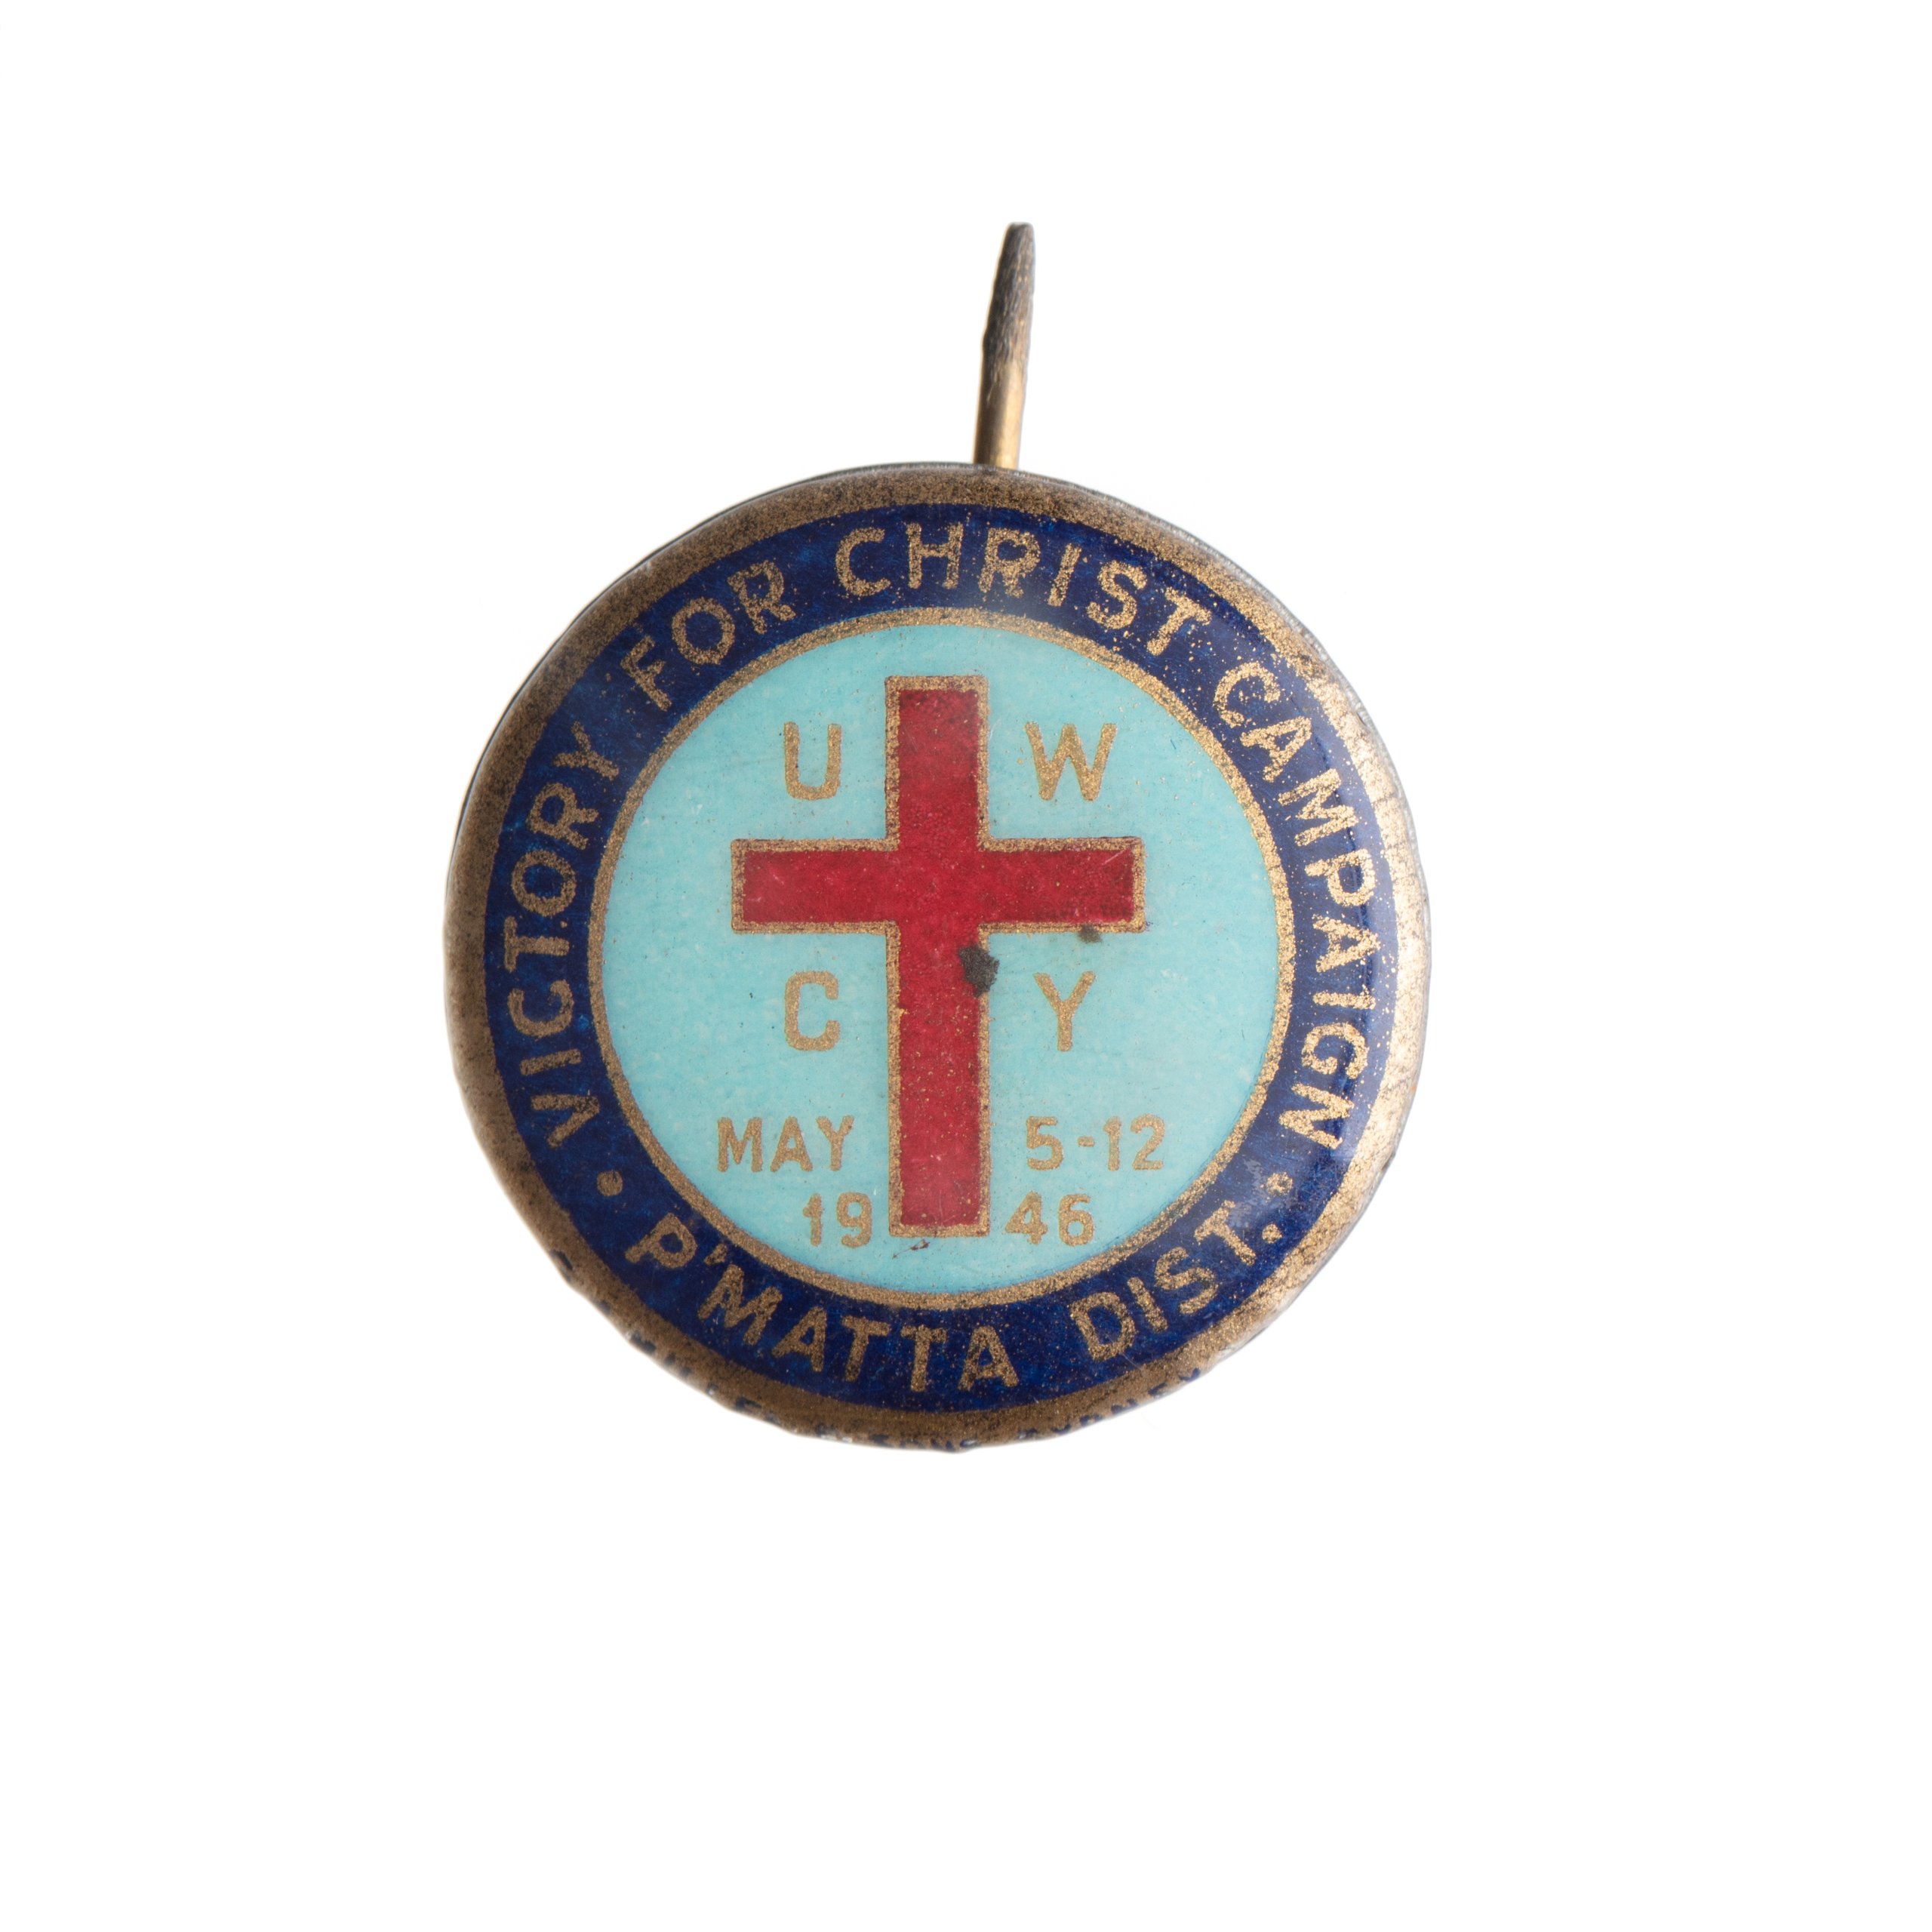 St John's Church badge